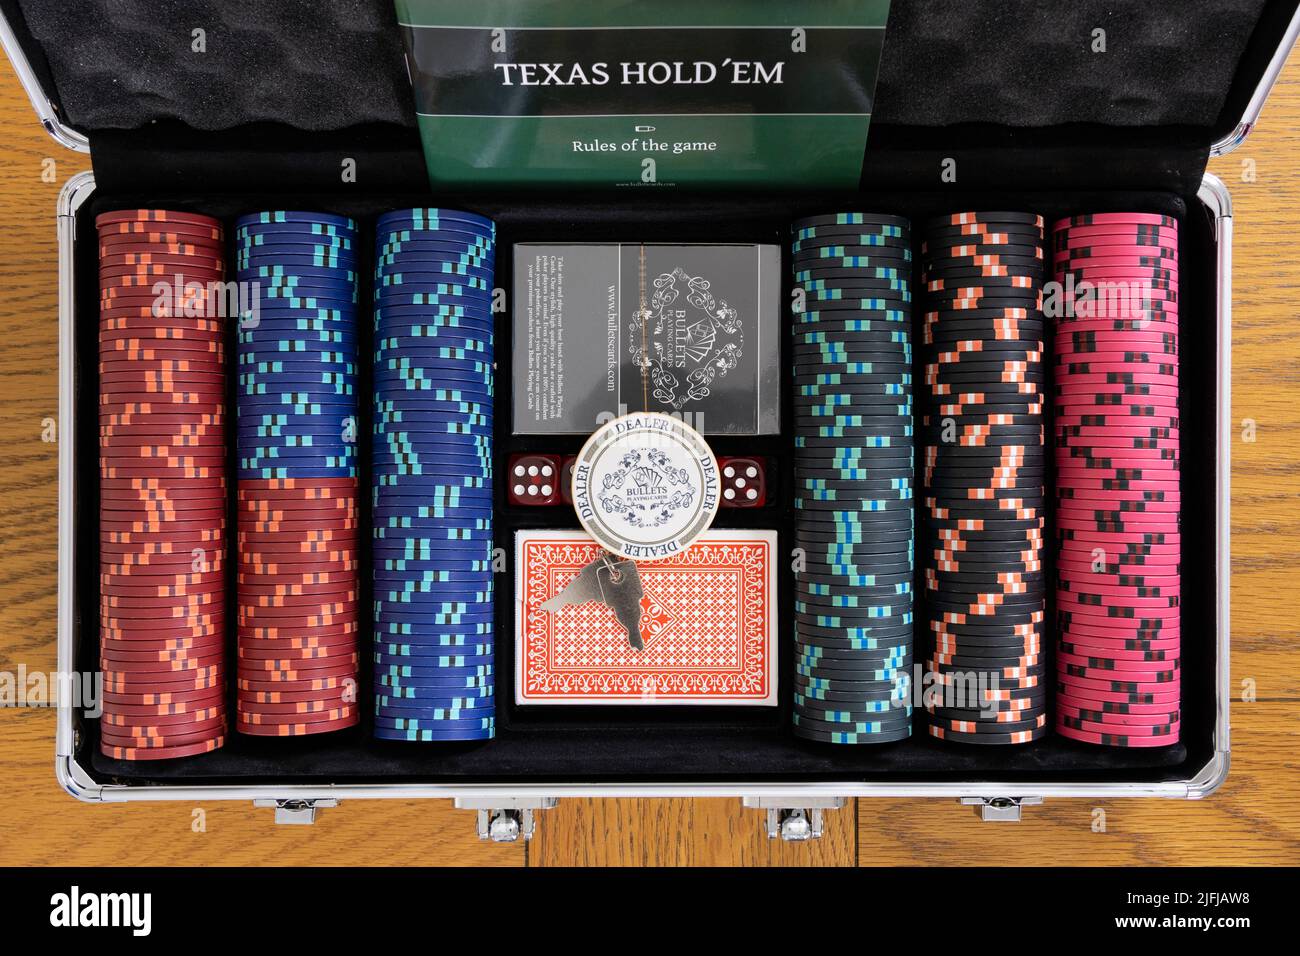 Un étui de poker métallique avec des jetons de mise, des packs de cartes à jouer et un jeton de distributeur pour jouer au Texas Hold'em. Thème - poker, jeu à la maison Banque D'Images